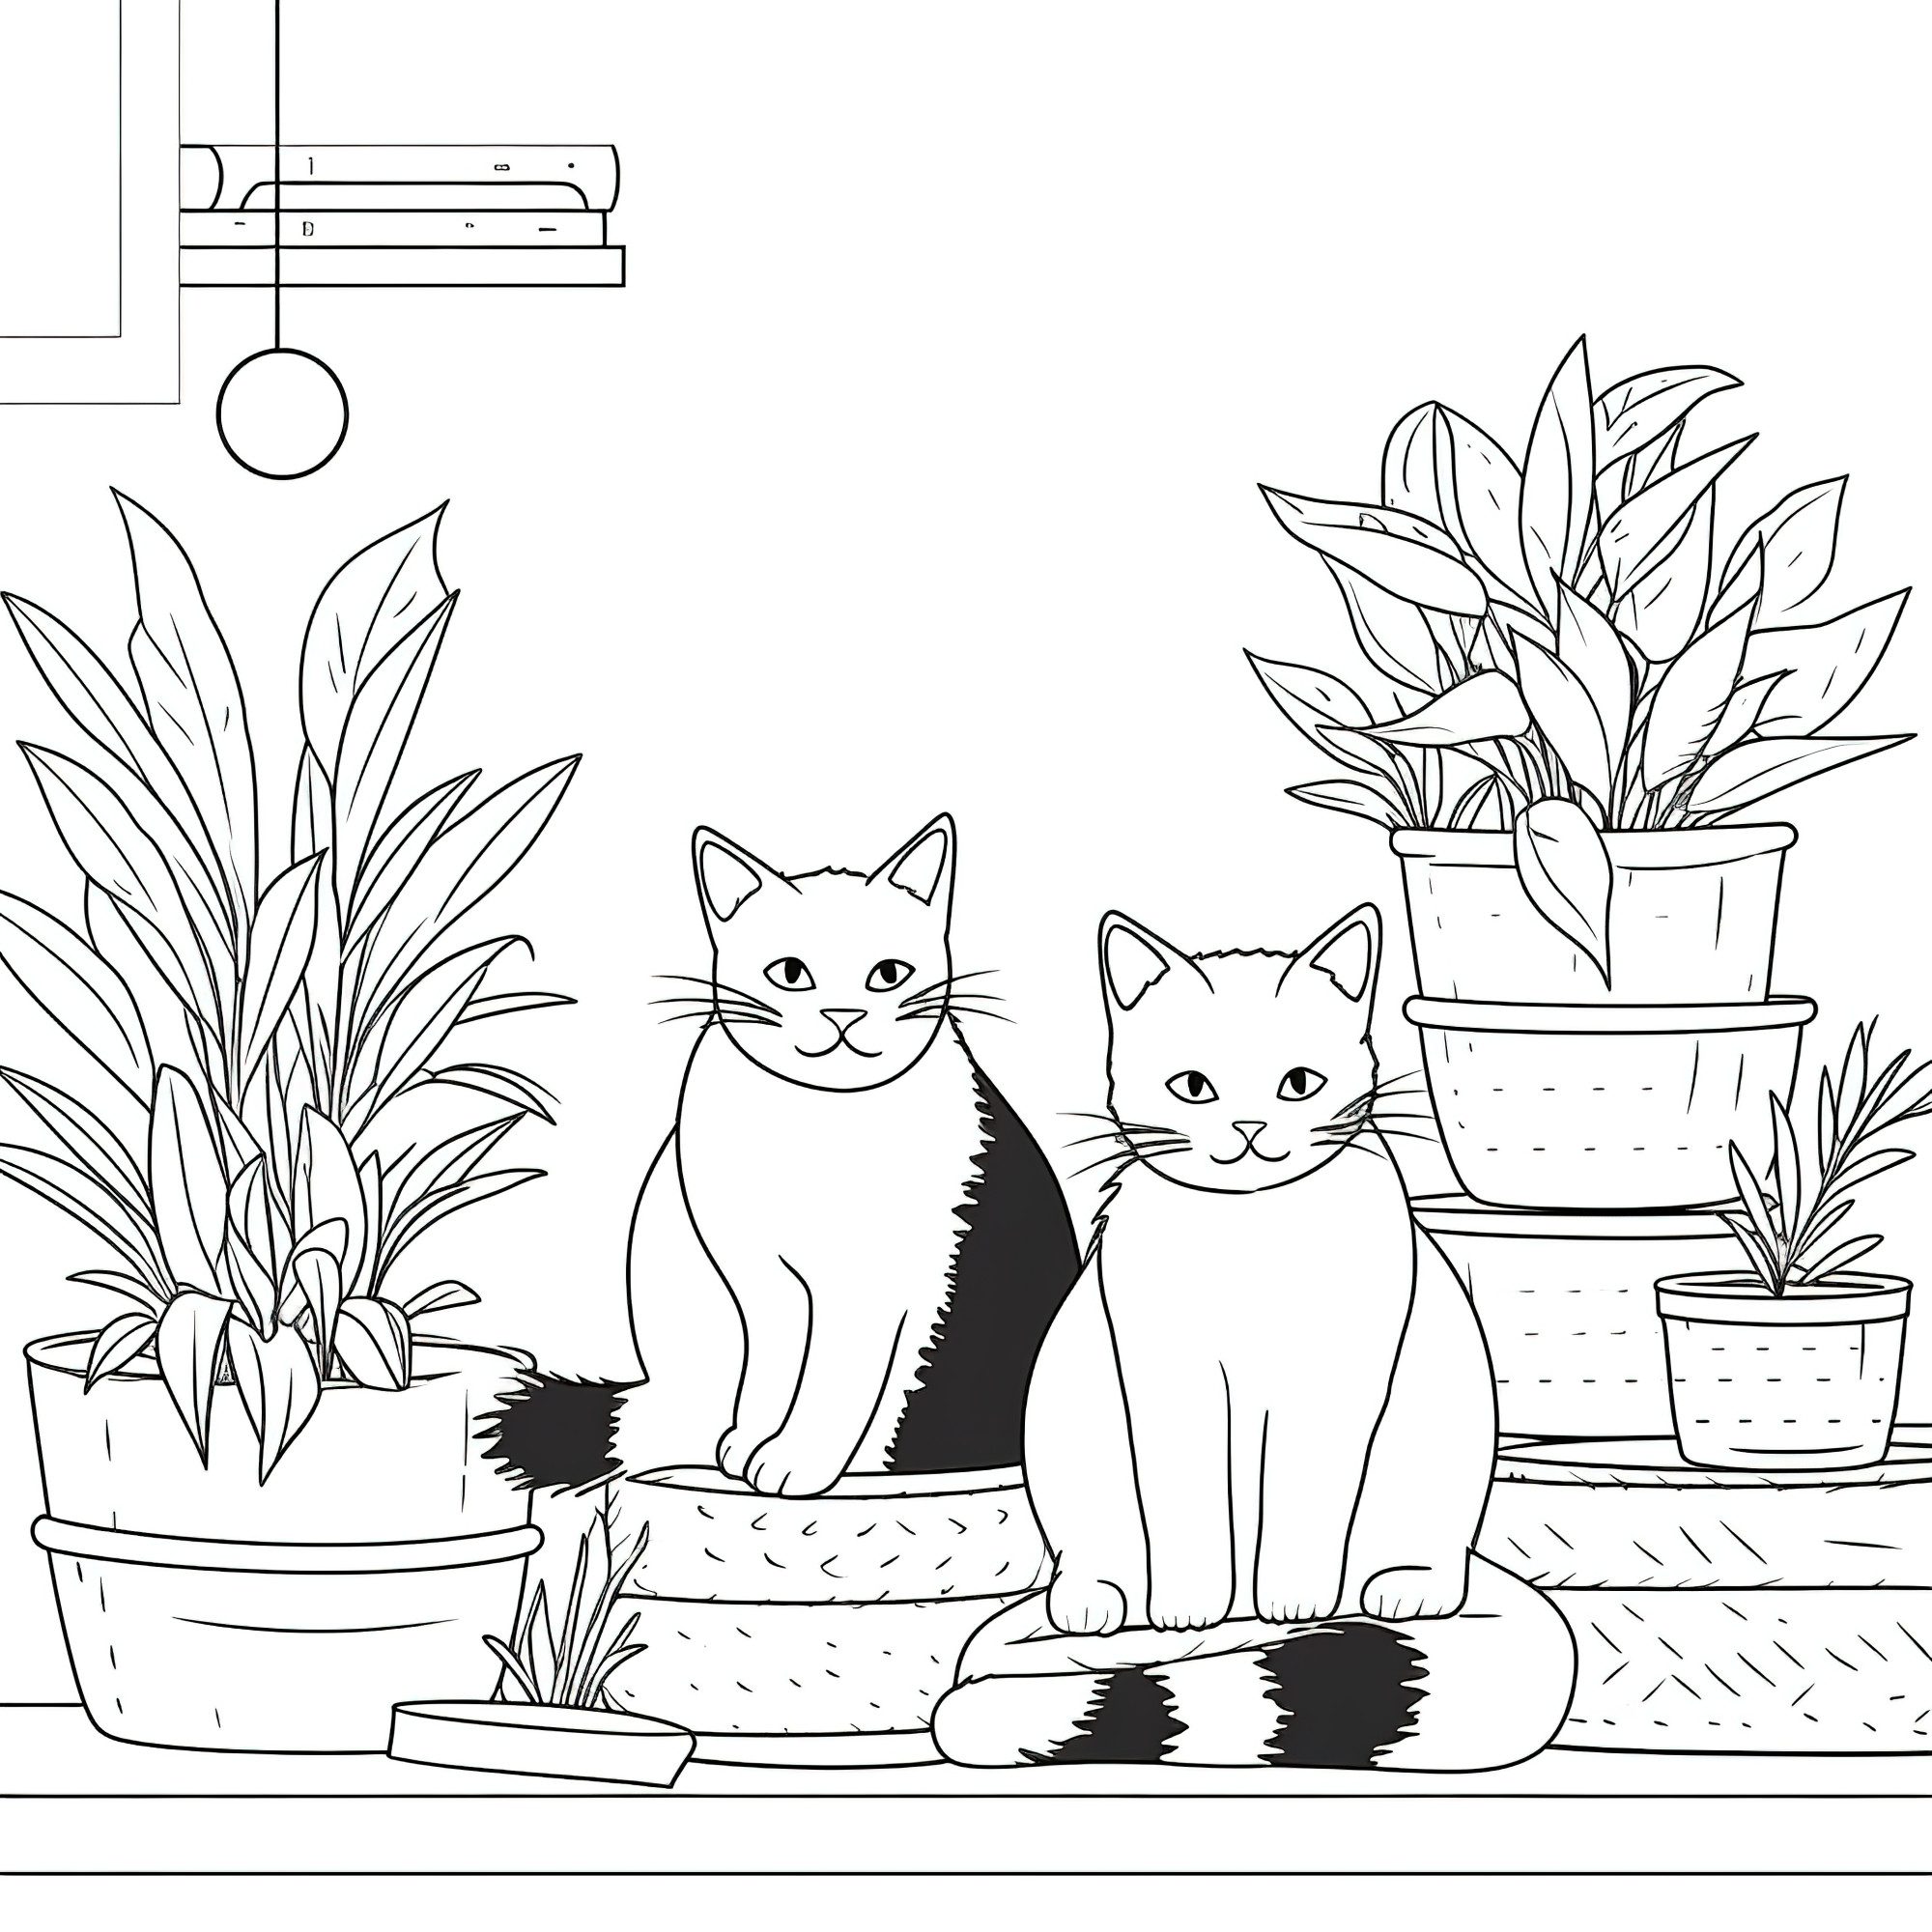 Раскраска для детей: черная кошка и кот на фоне комнатных растений